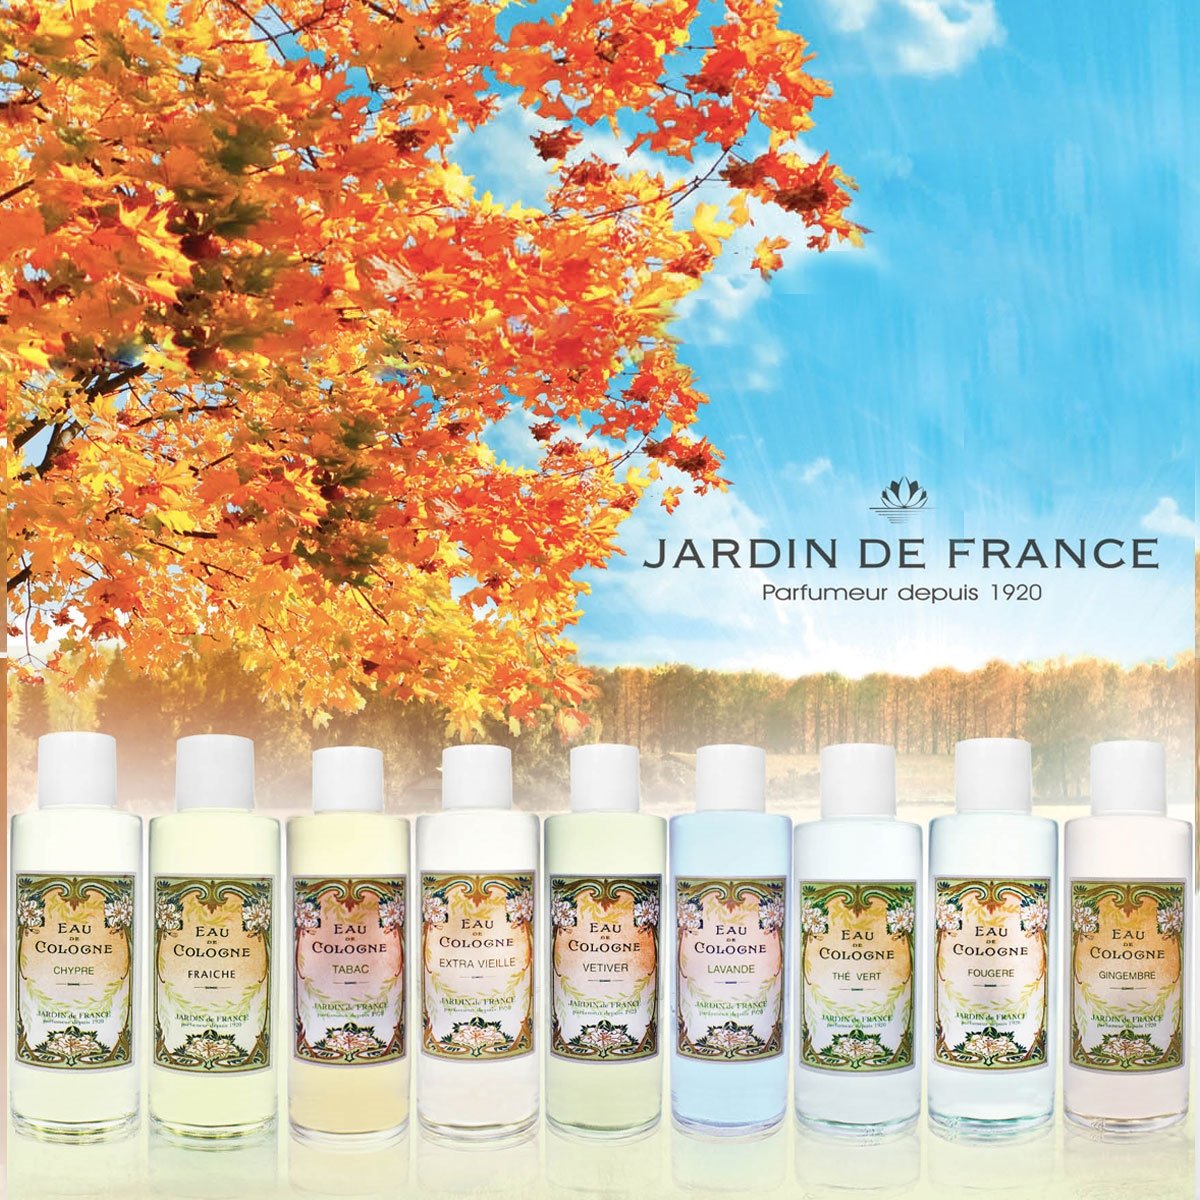 Perfume Jardin de France Chypre - Eau de Cologne 490ml 2